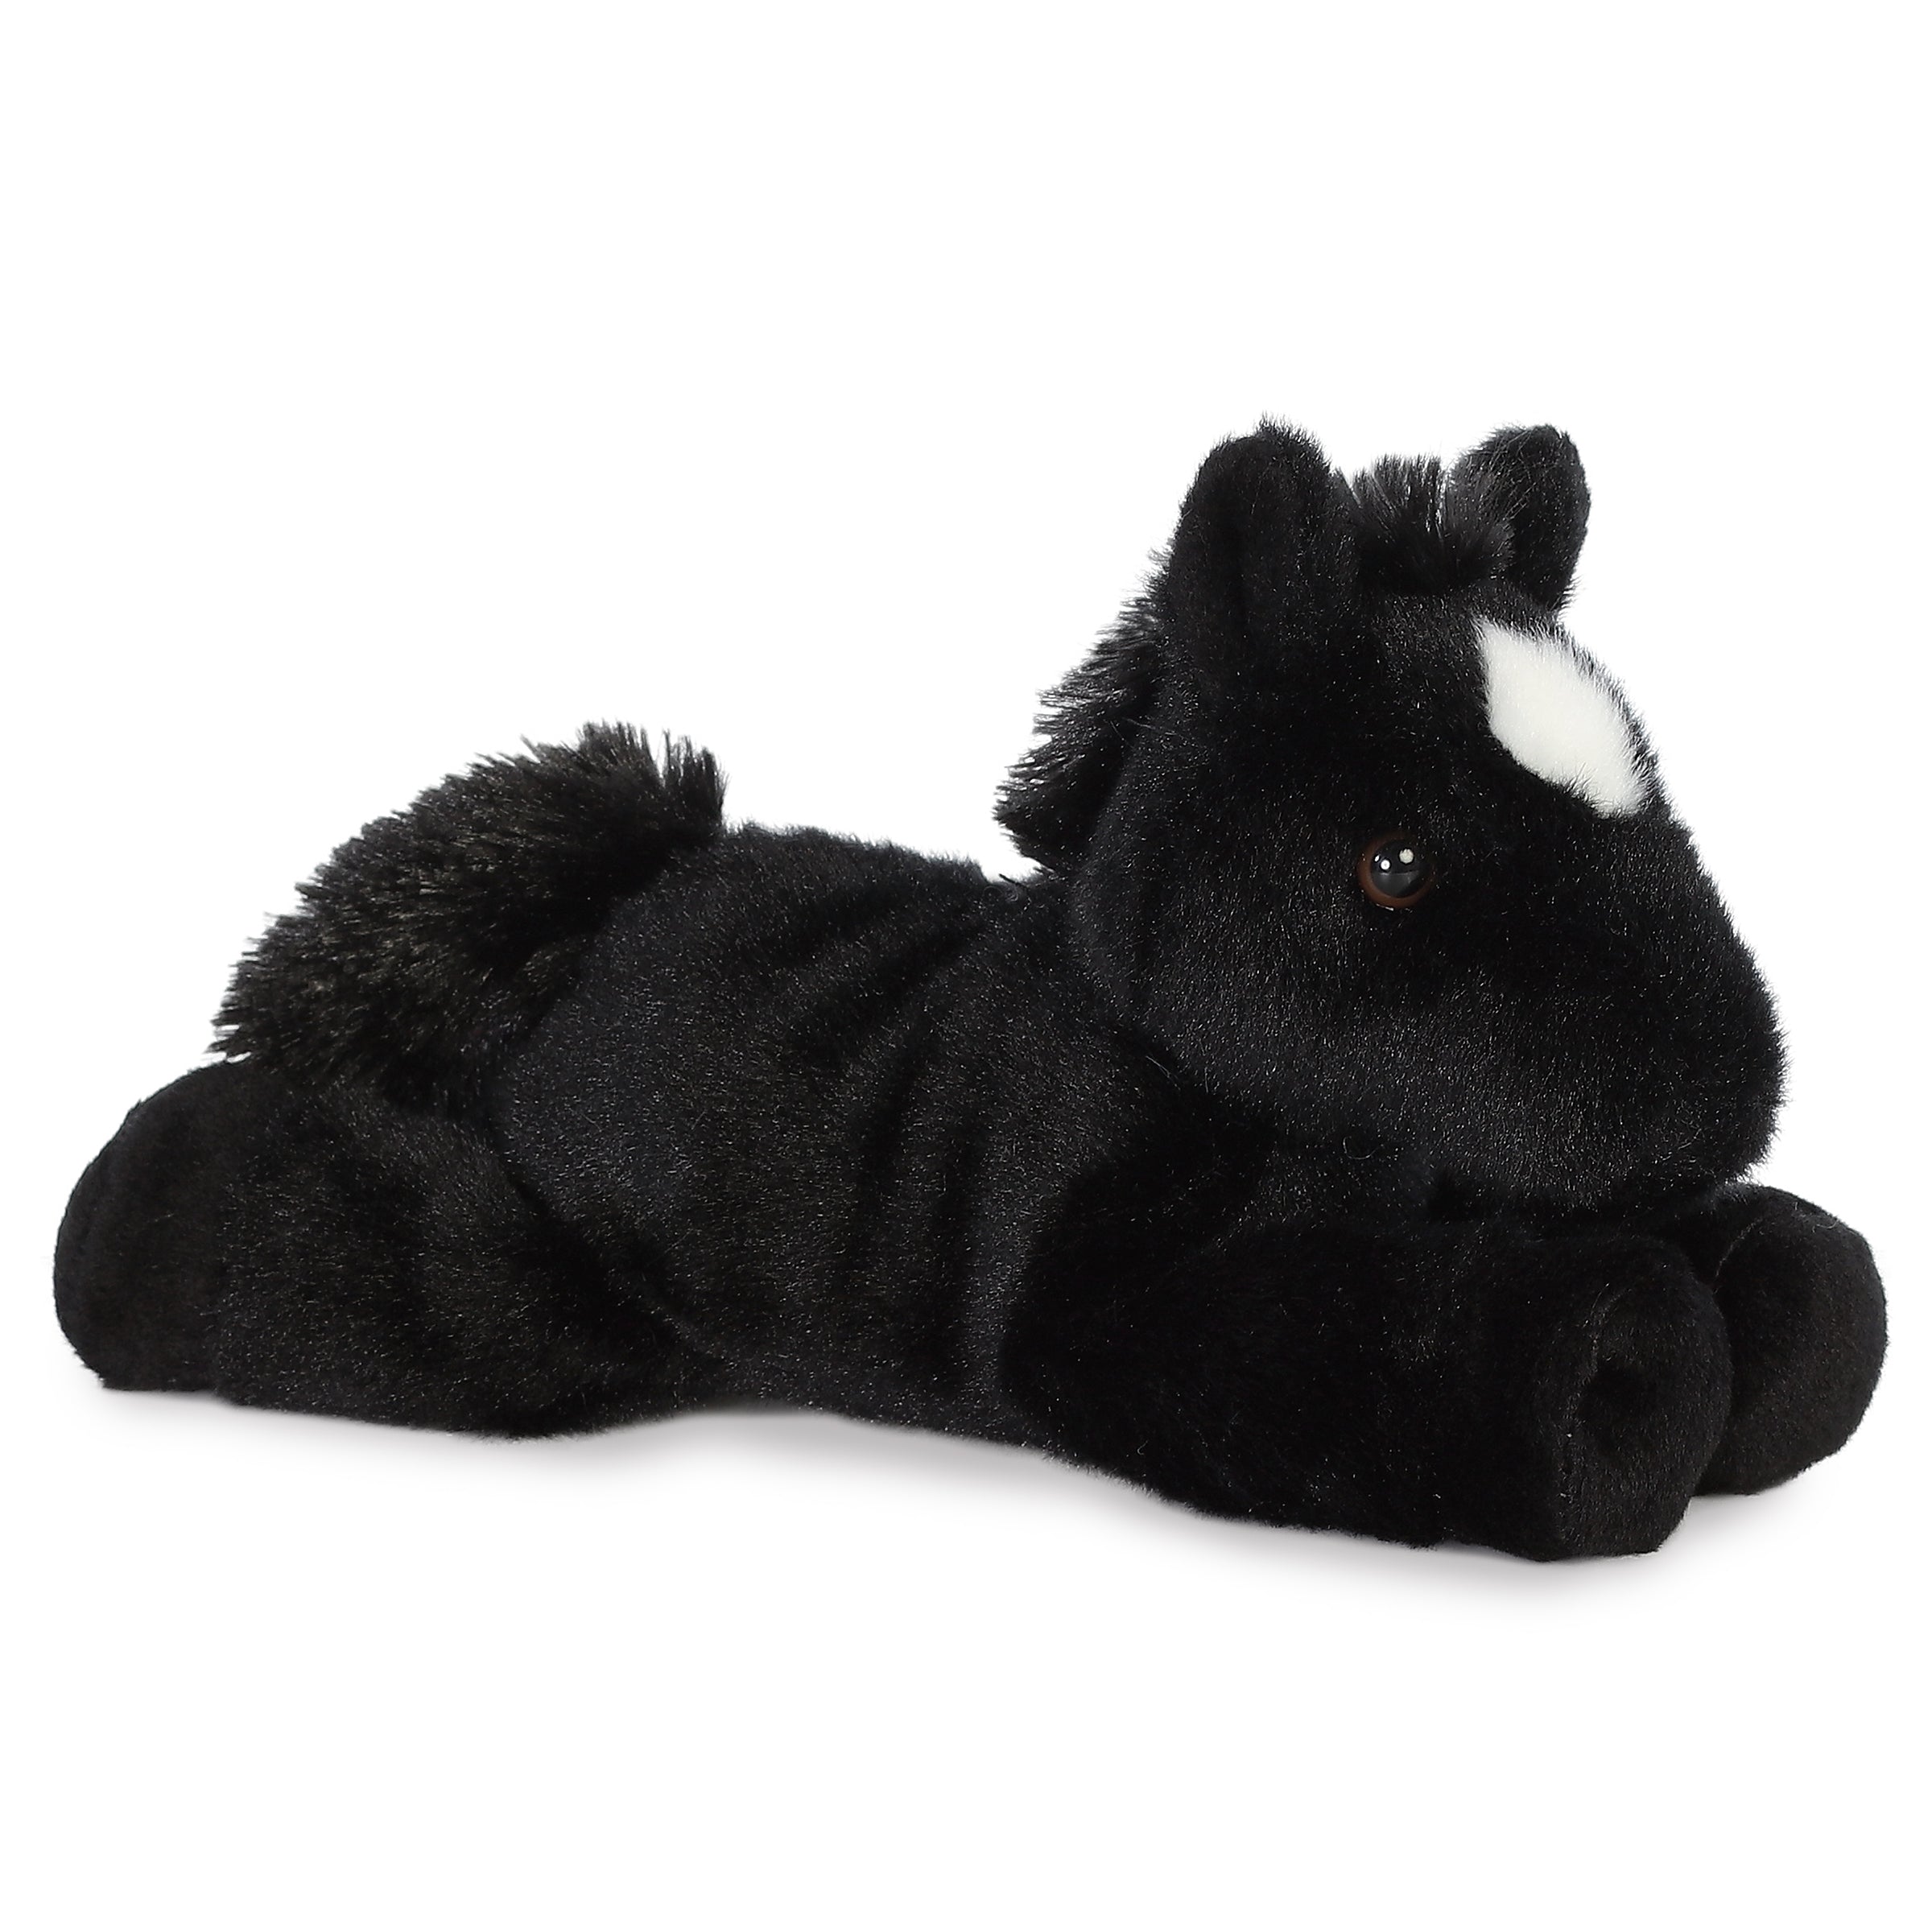 Aurora - Mini Flopsie - 8 Beau Black Horse